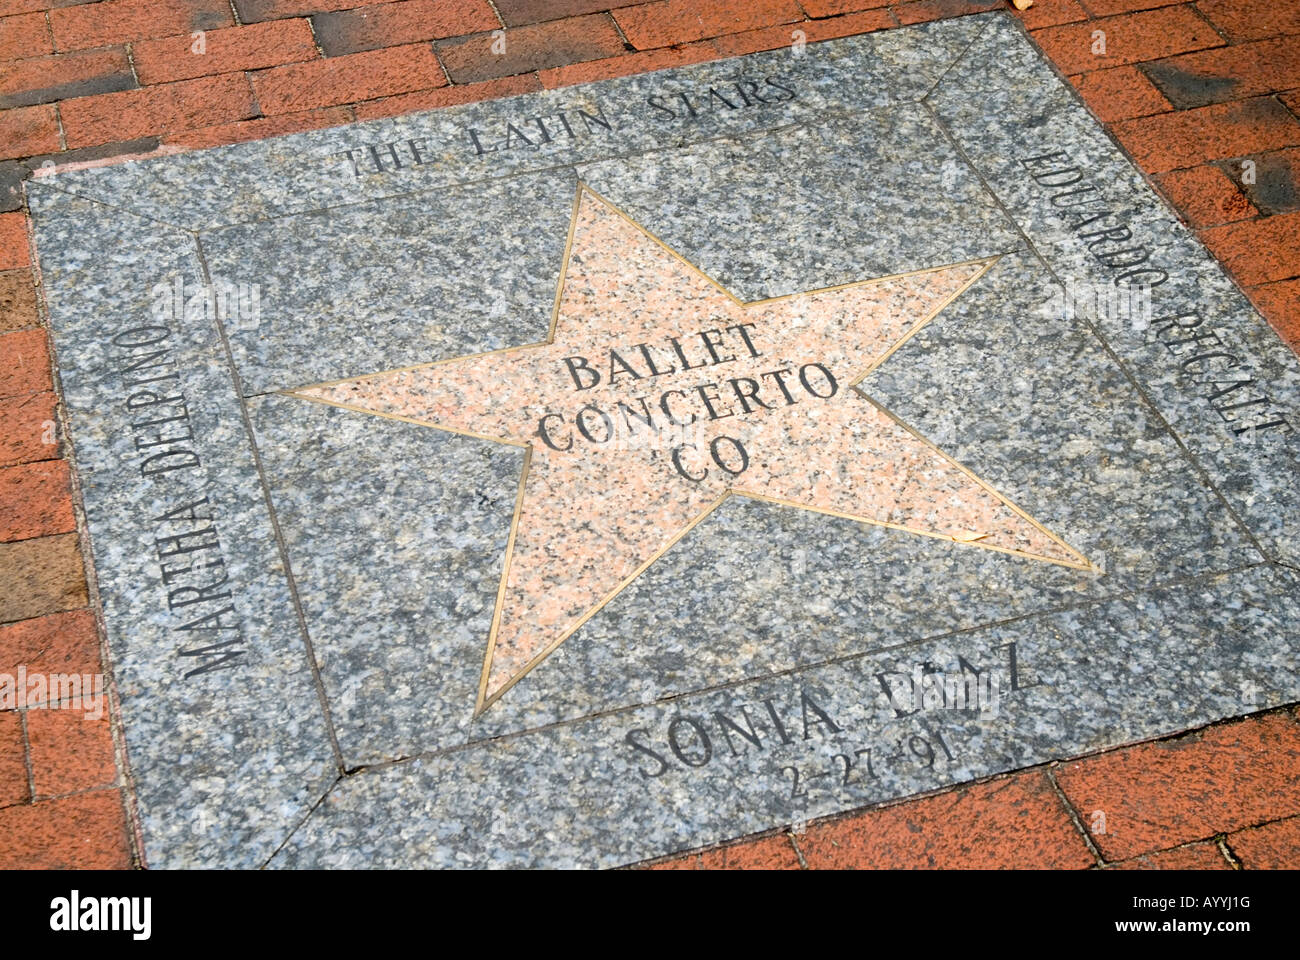 Star célèbre Concerto Ballet sur Calle Ocho walk of fame dans Little Havana Miami, USA Banque D'Images